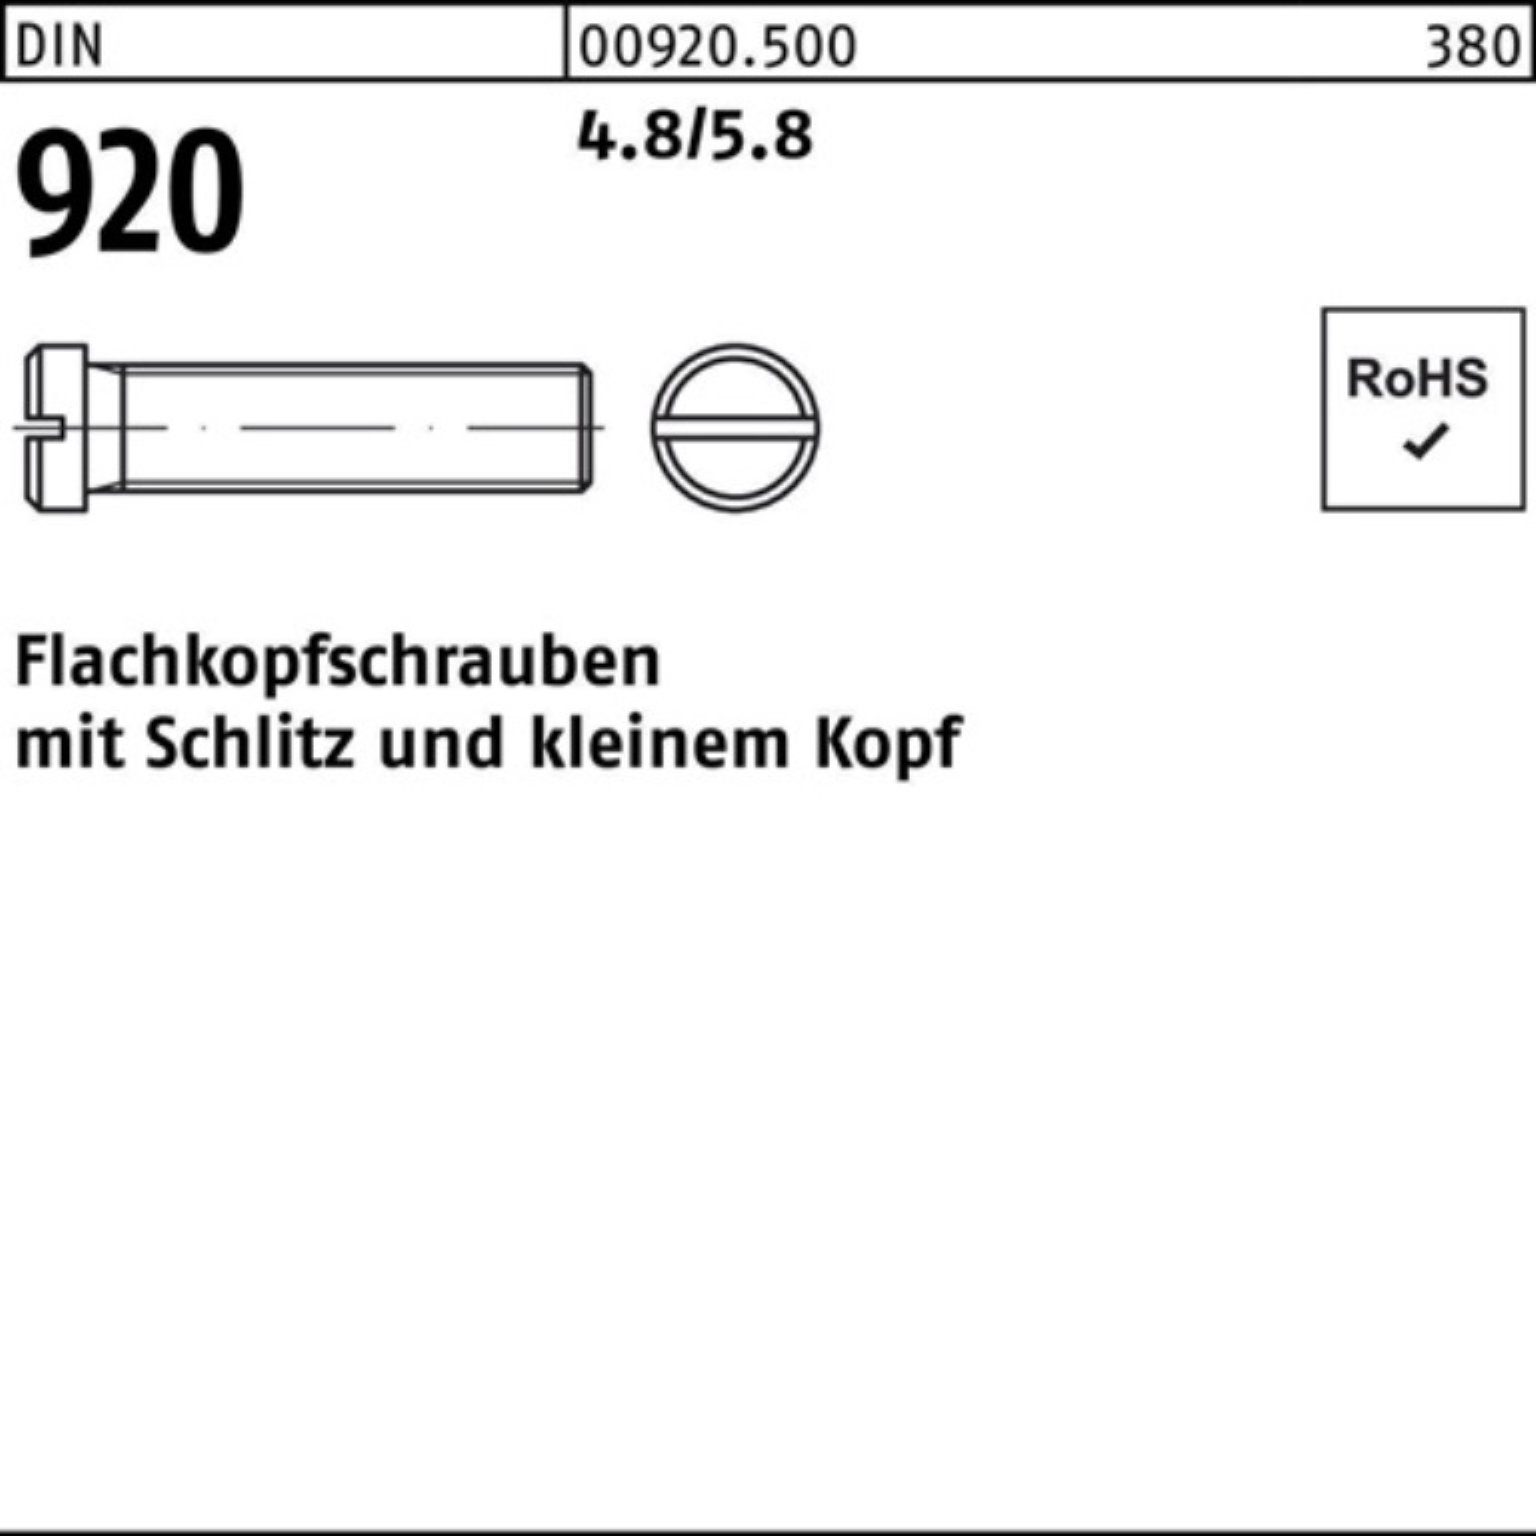 Reyher Schraube 100er Pack Flachkopfschraube DIN 920 Schlitz M3x 6 4.8/5.8 100 Stück